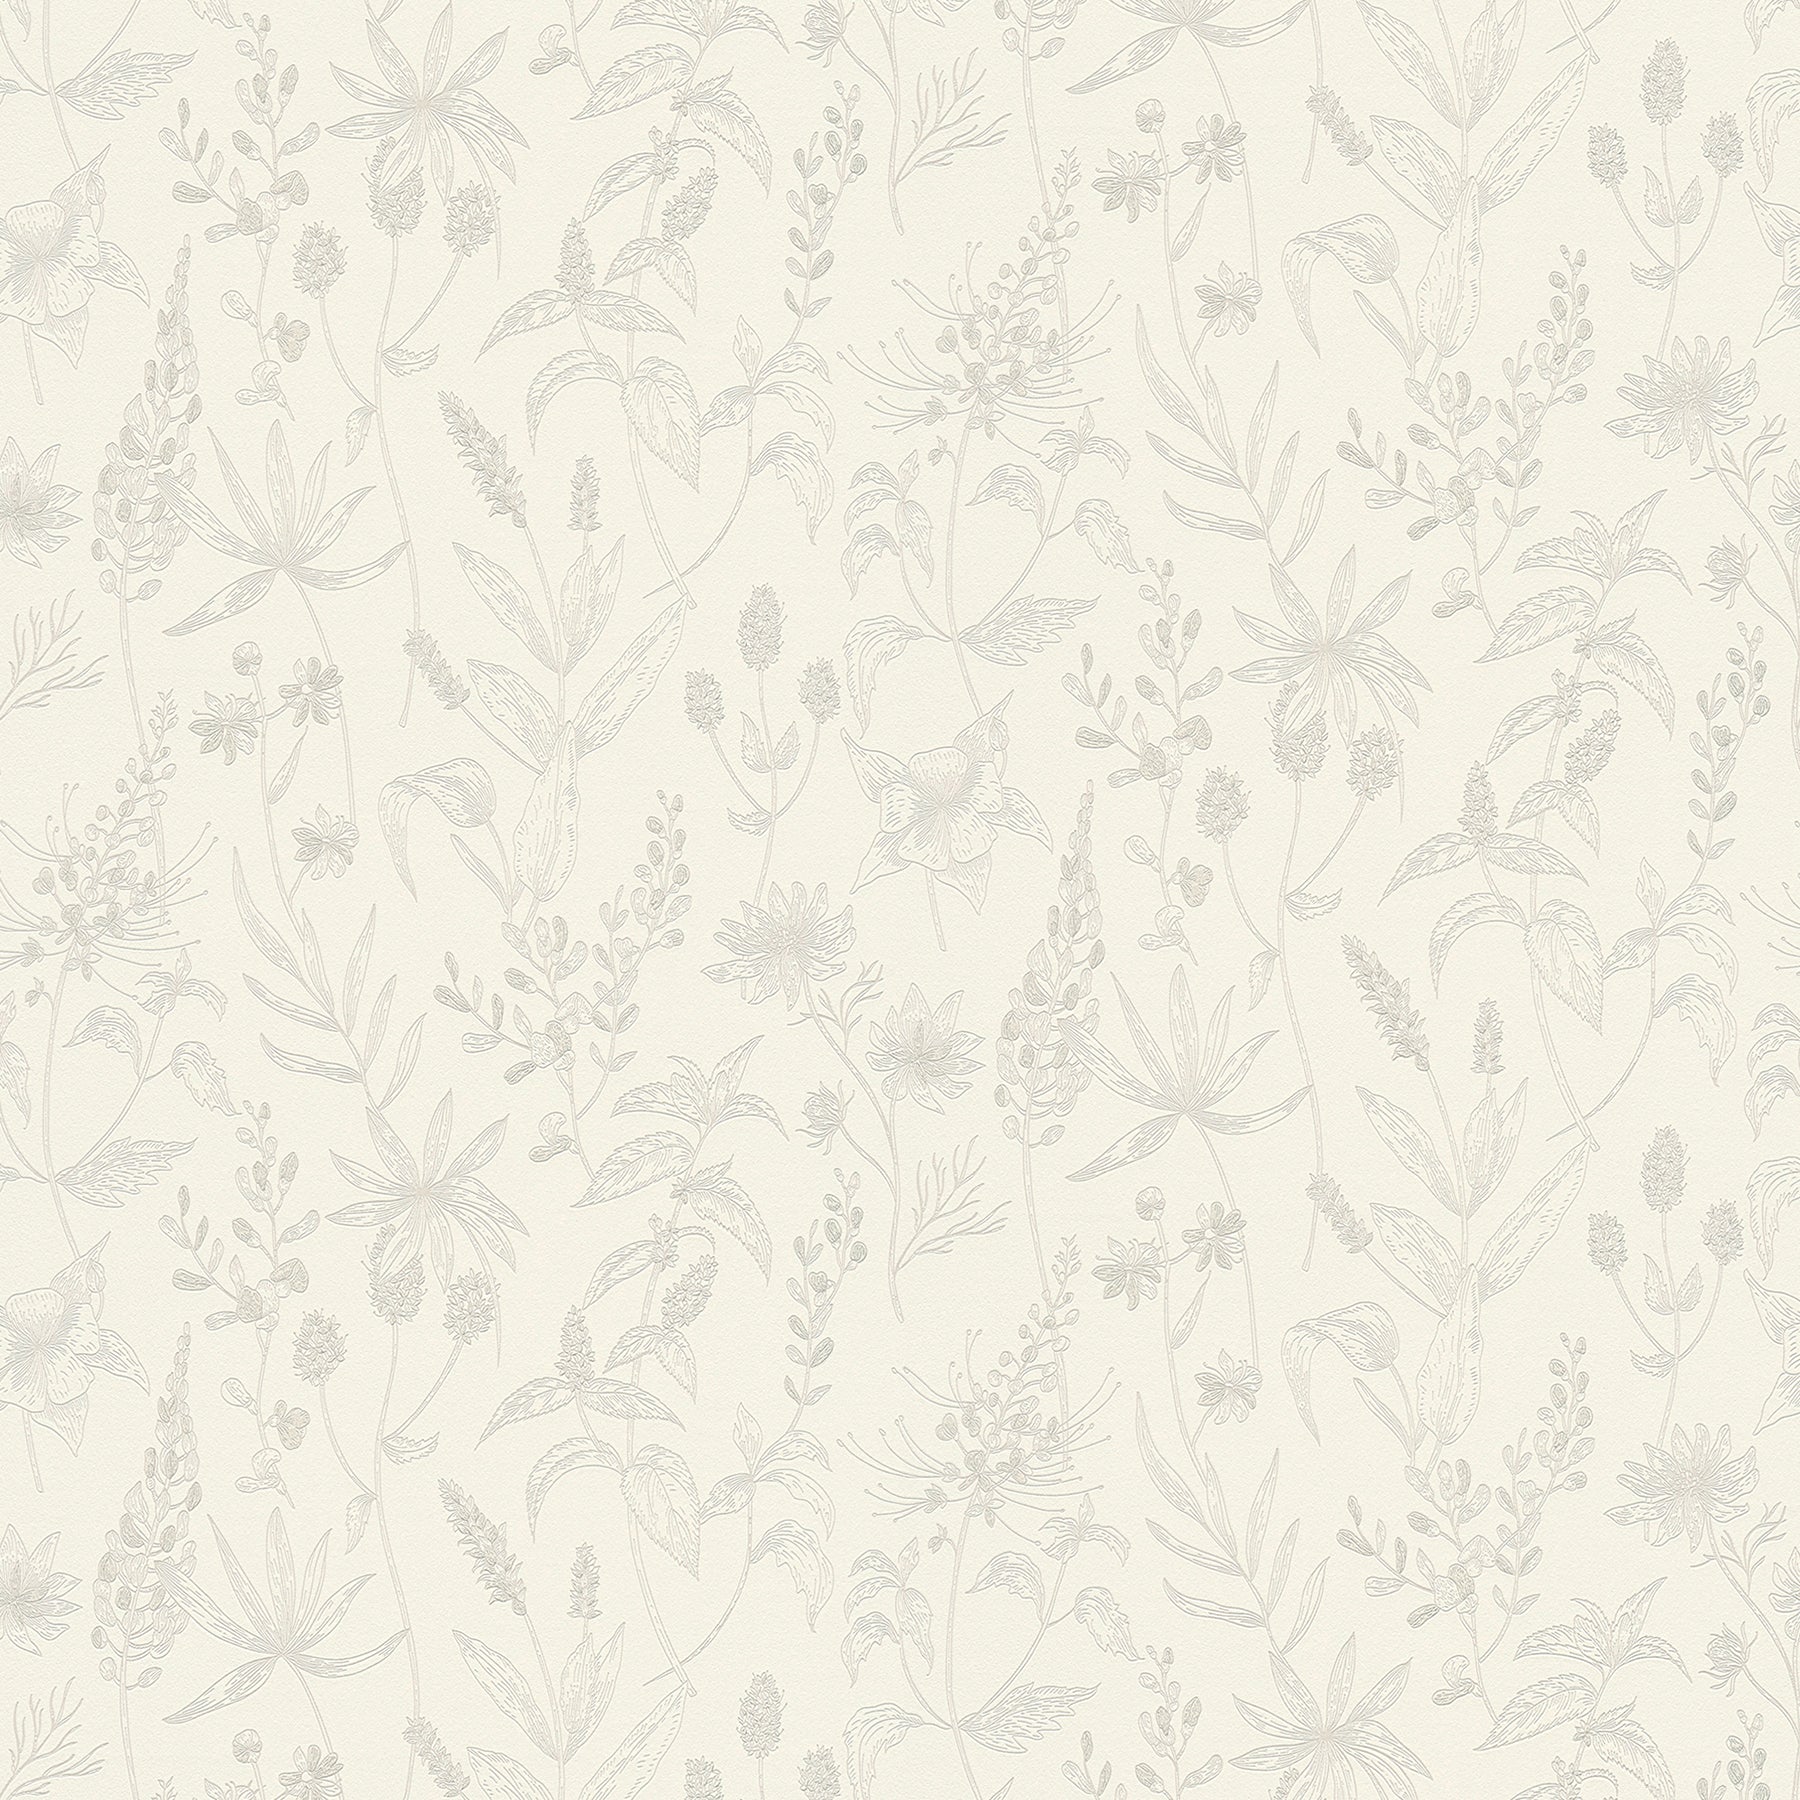 Search 2979-37363-1 Bali Nami White Floral White by Advantage Wallpaper